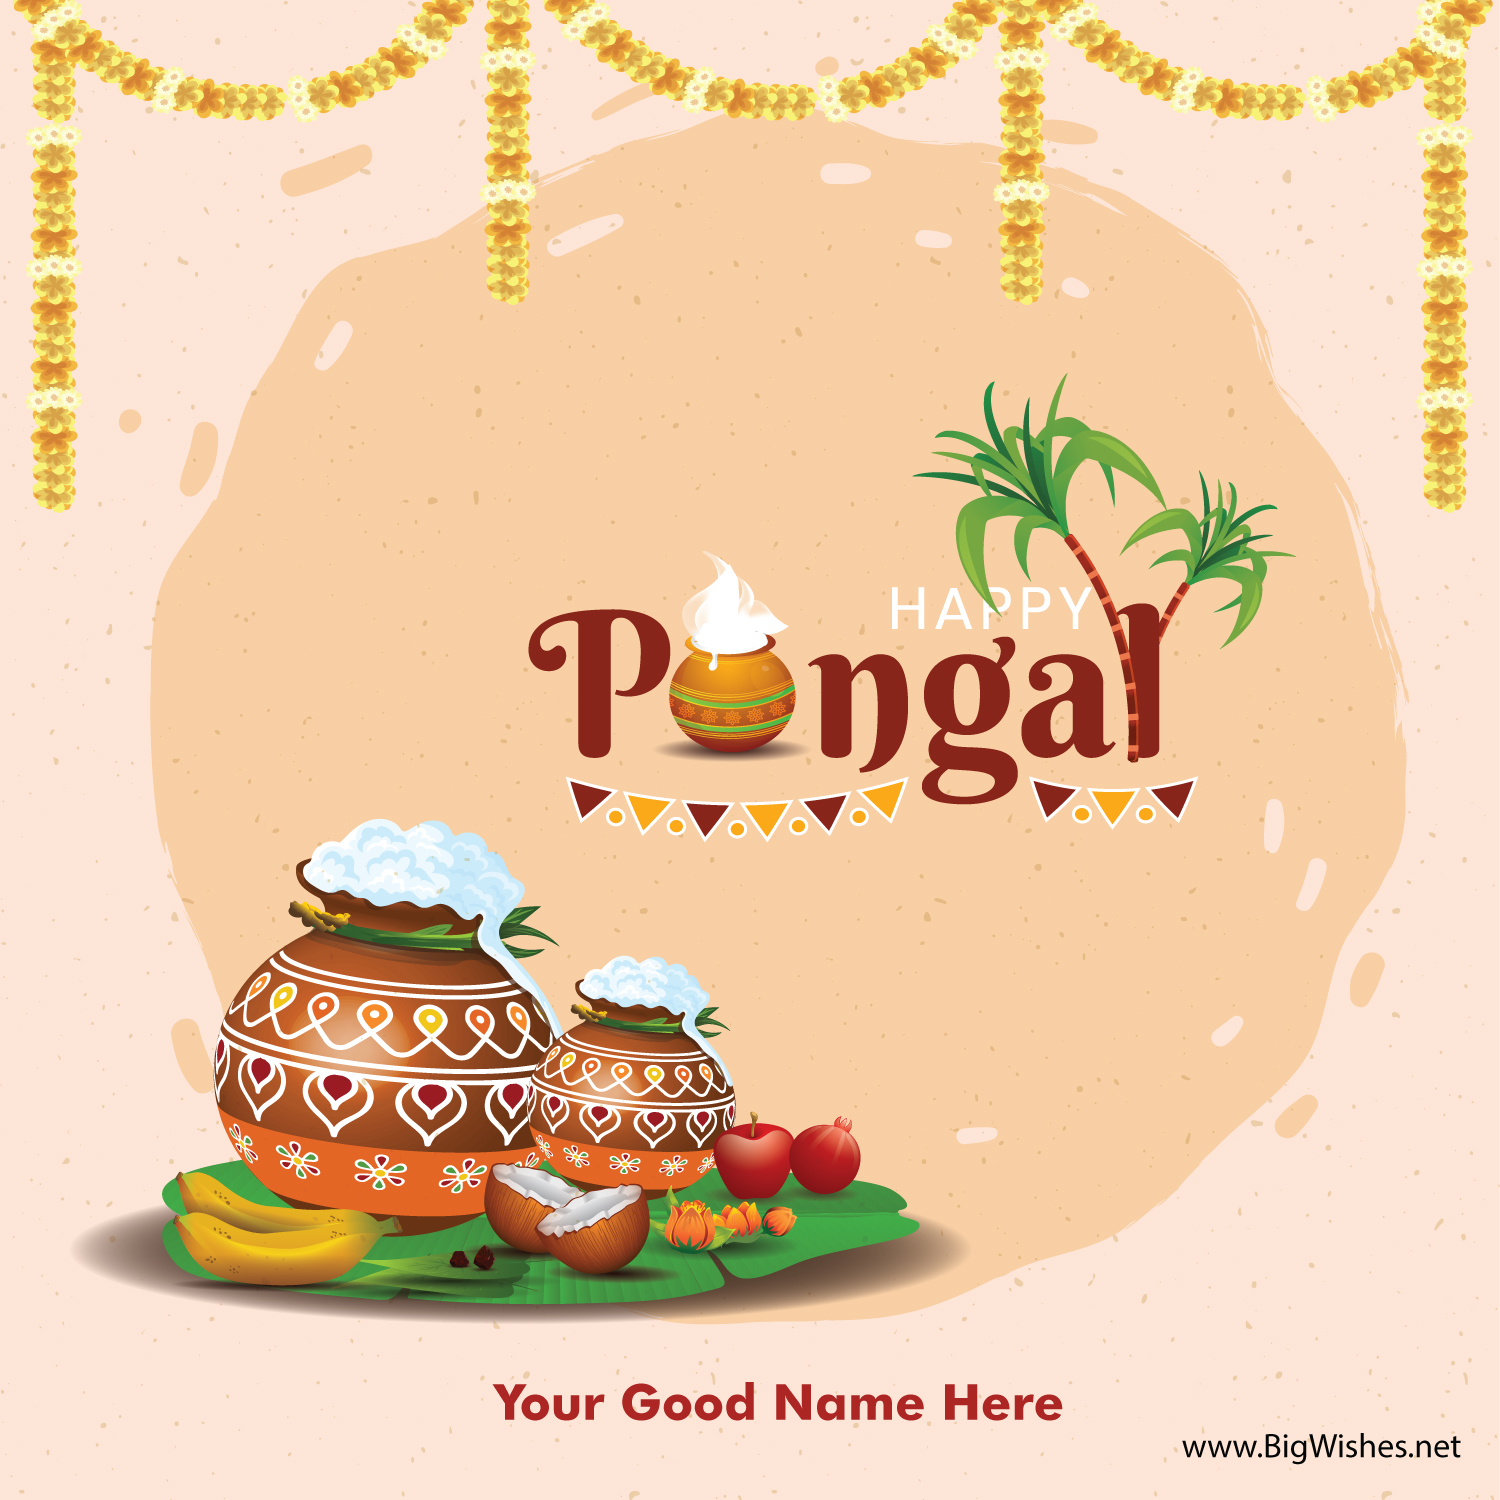 Happy Pongal Image